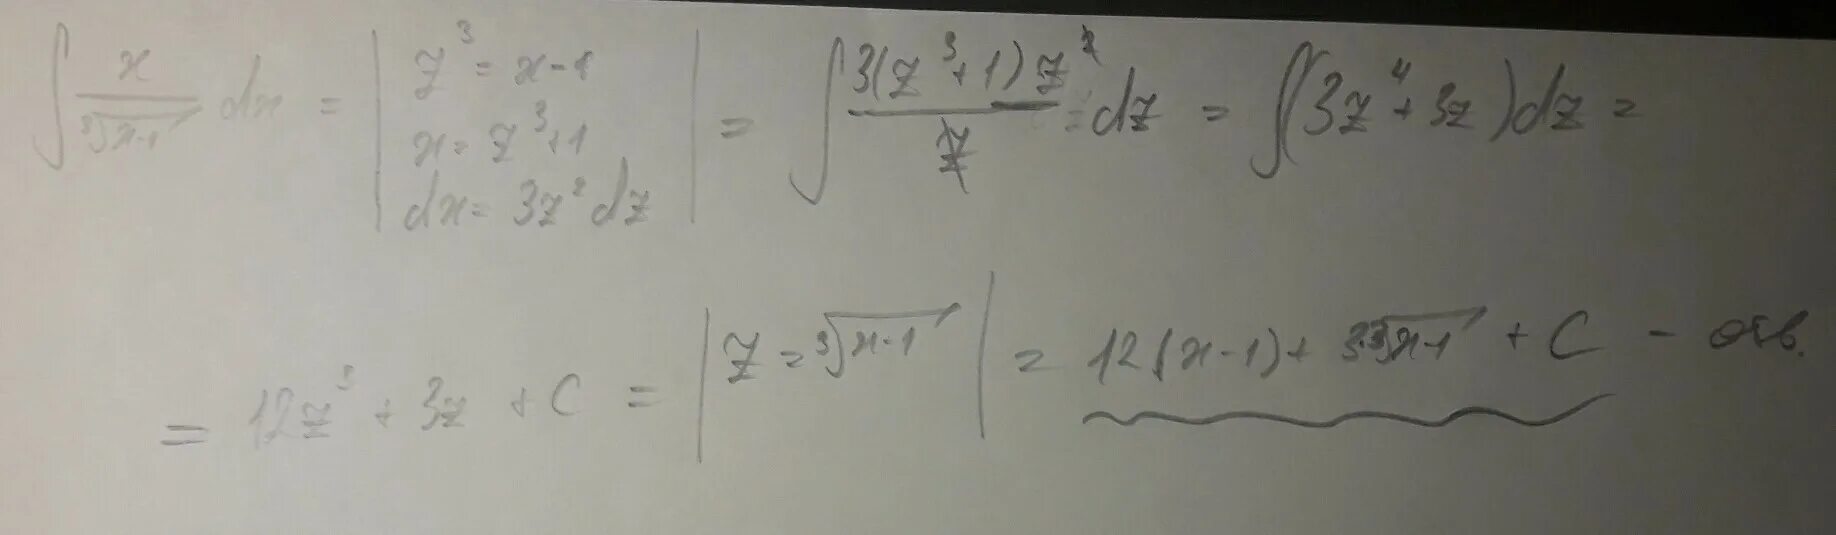 DX/1+корень x. S DX/(1-2x)3. Корень x - 1/корень x DX. Интеграл корень 3 степени из x.